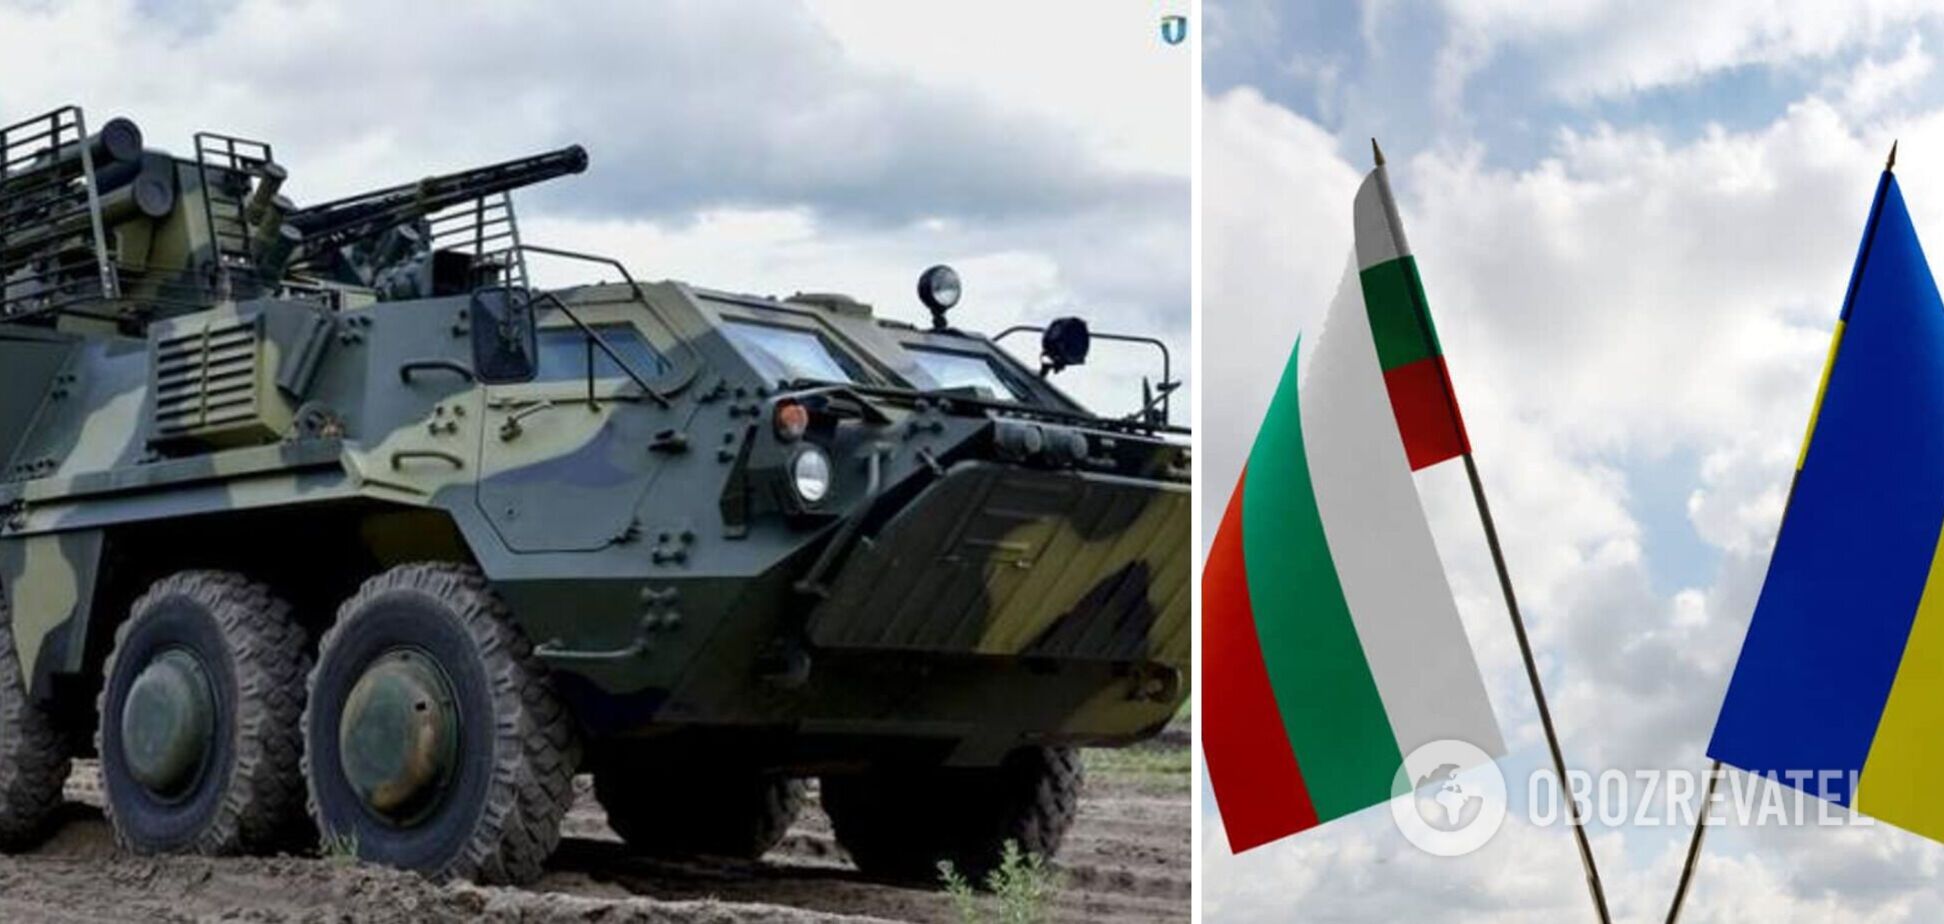 Болгария впервые передала партию военной помощи Украине не в режиме 'секретно': вошедшее в пакет